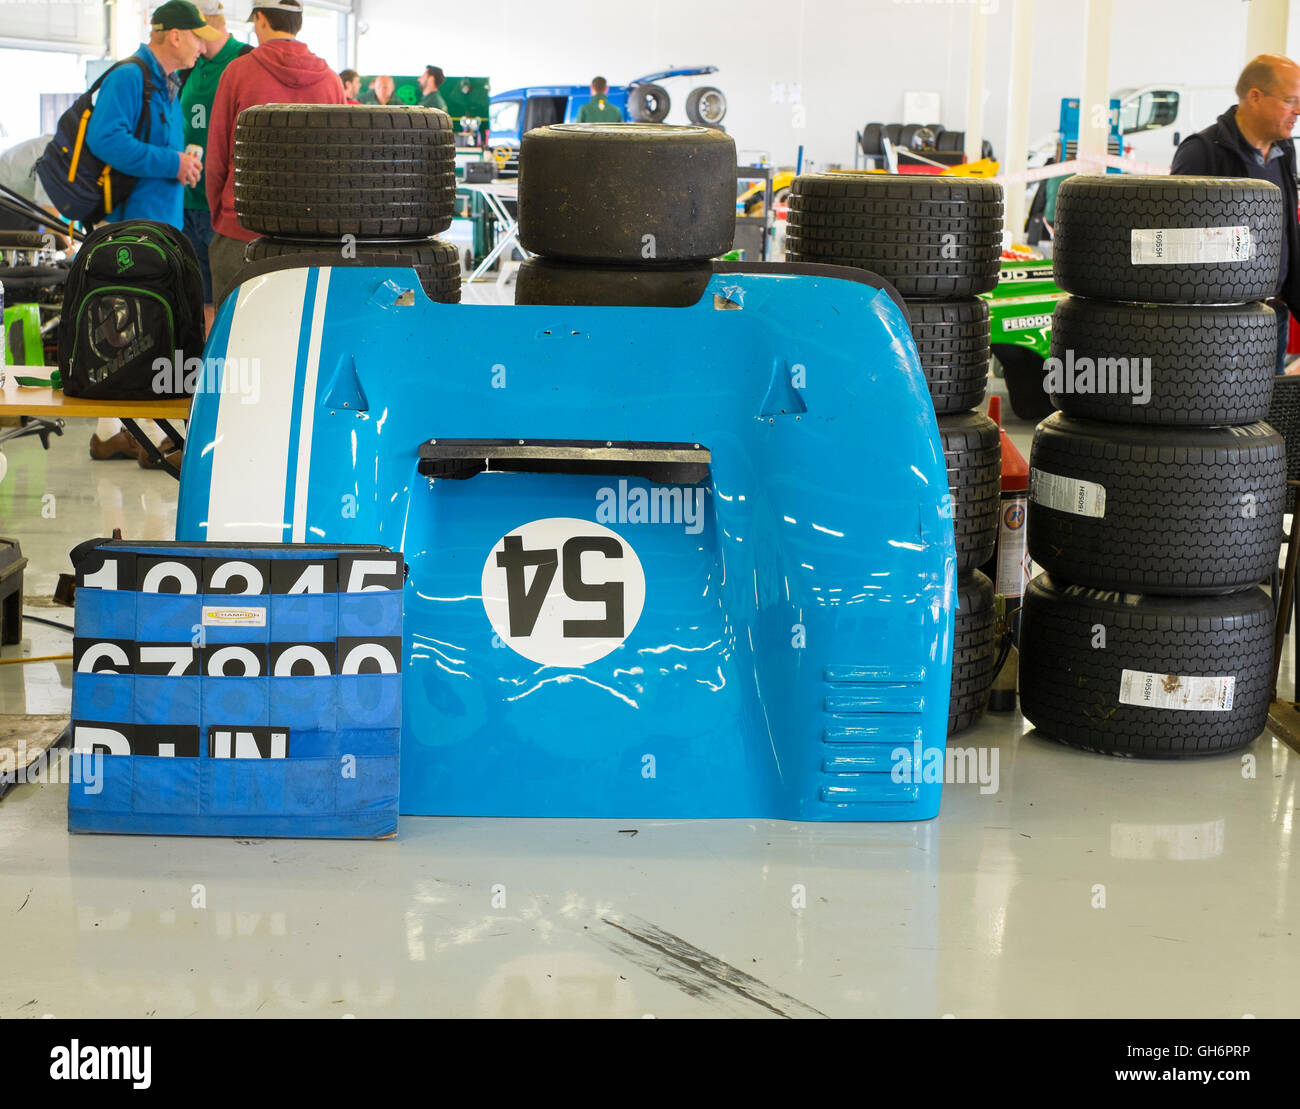 Avant de Jonathan Loader, Chevron B19 voiture de sport avec des pneus de course dans les stands à Silverstone Classic 2016 Événement, UK Banque D'Images